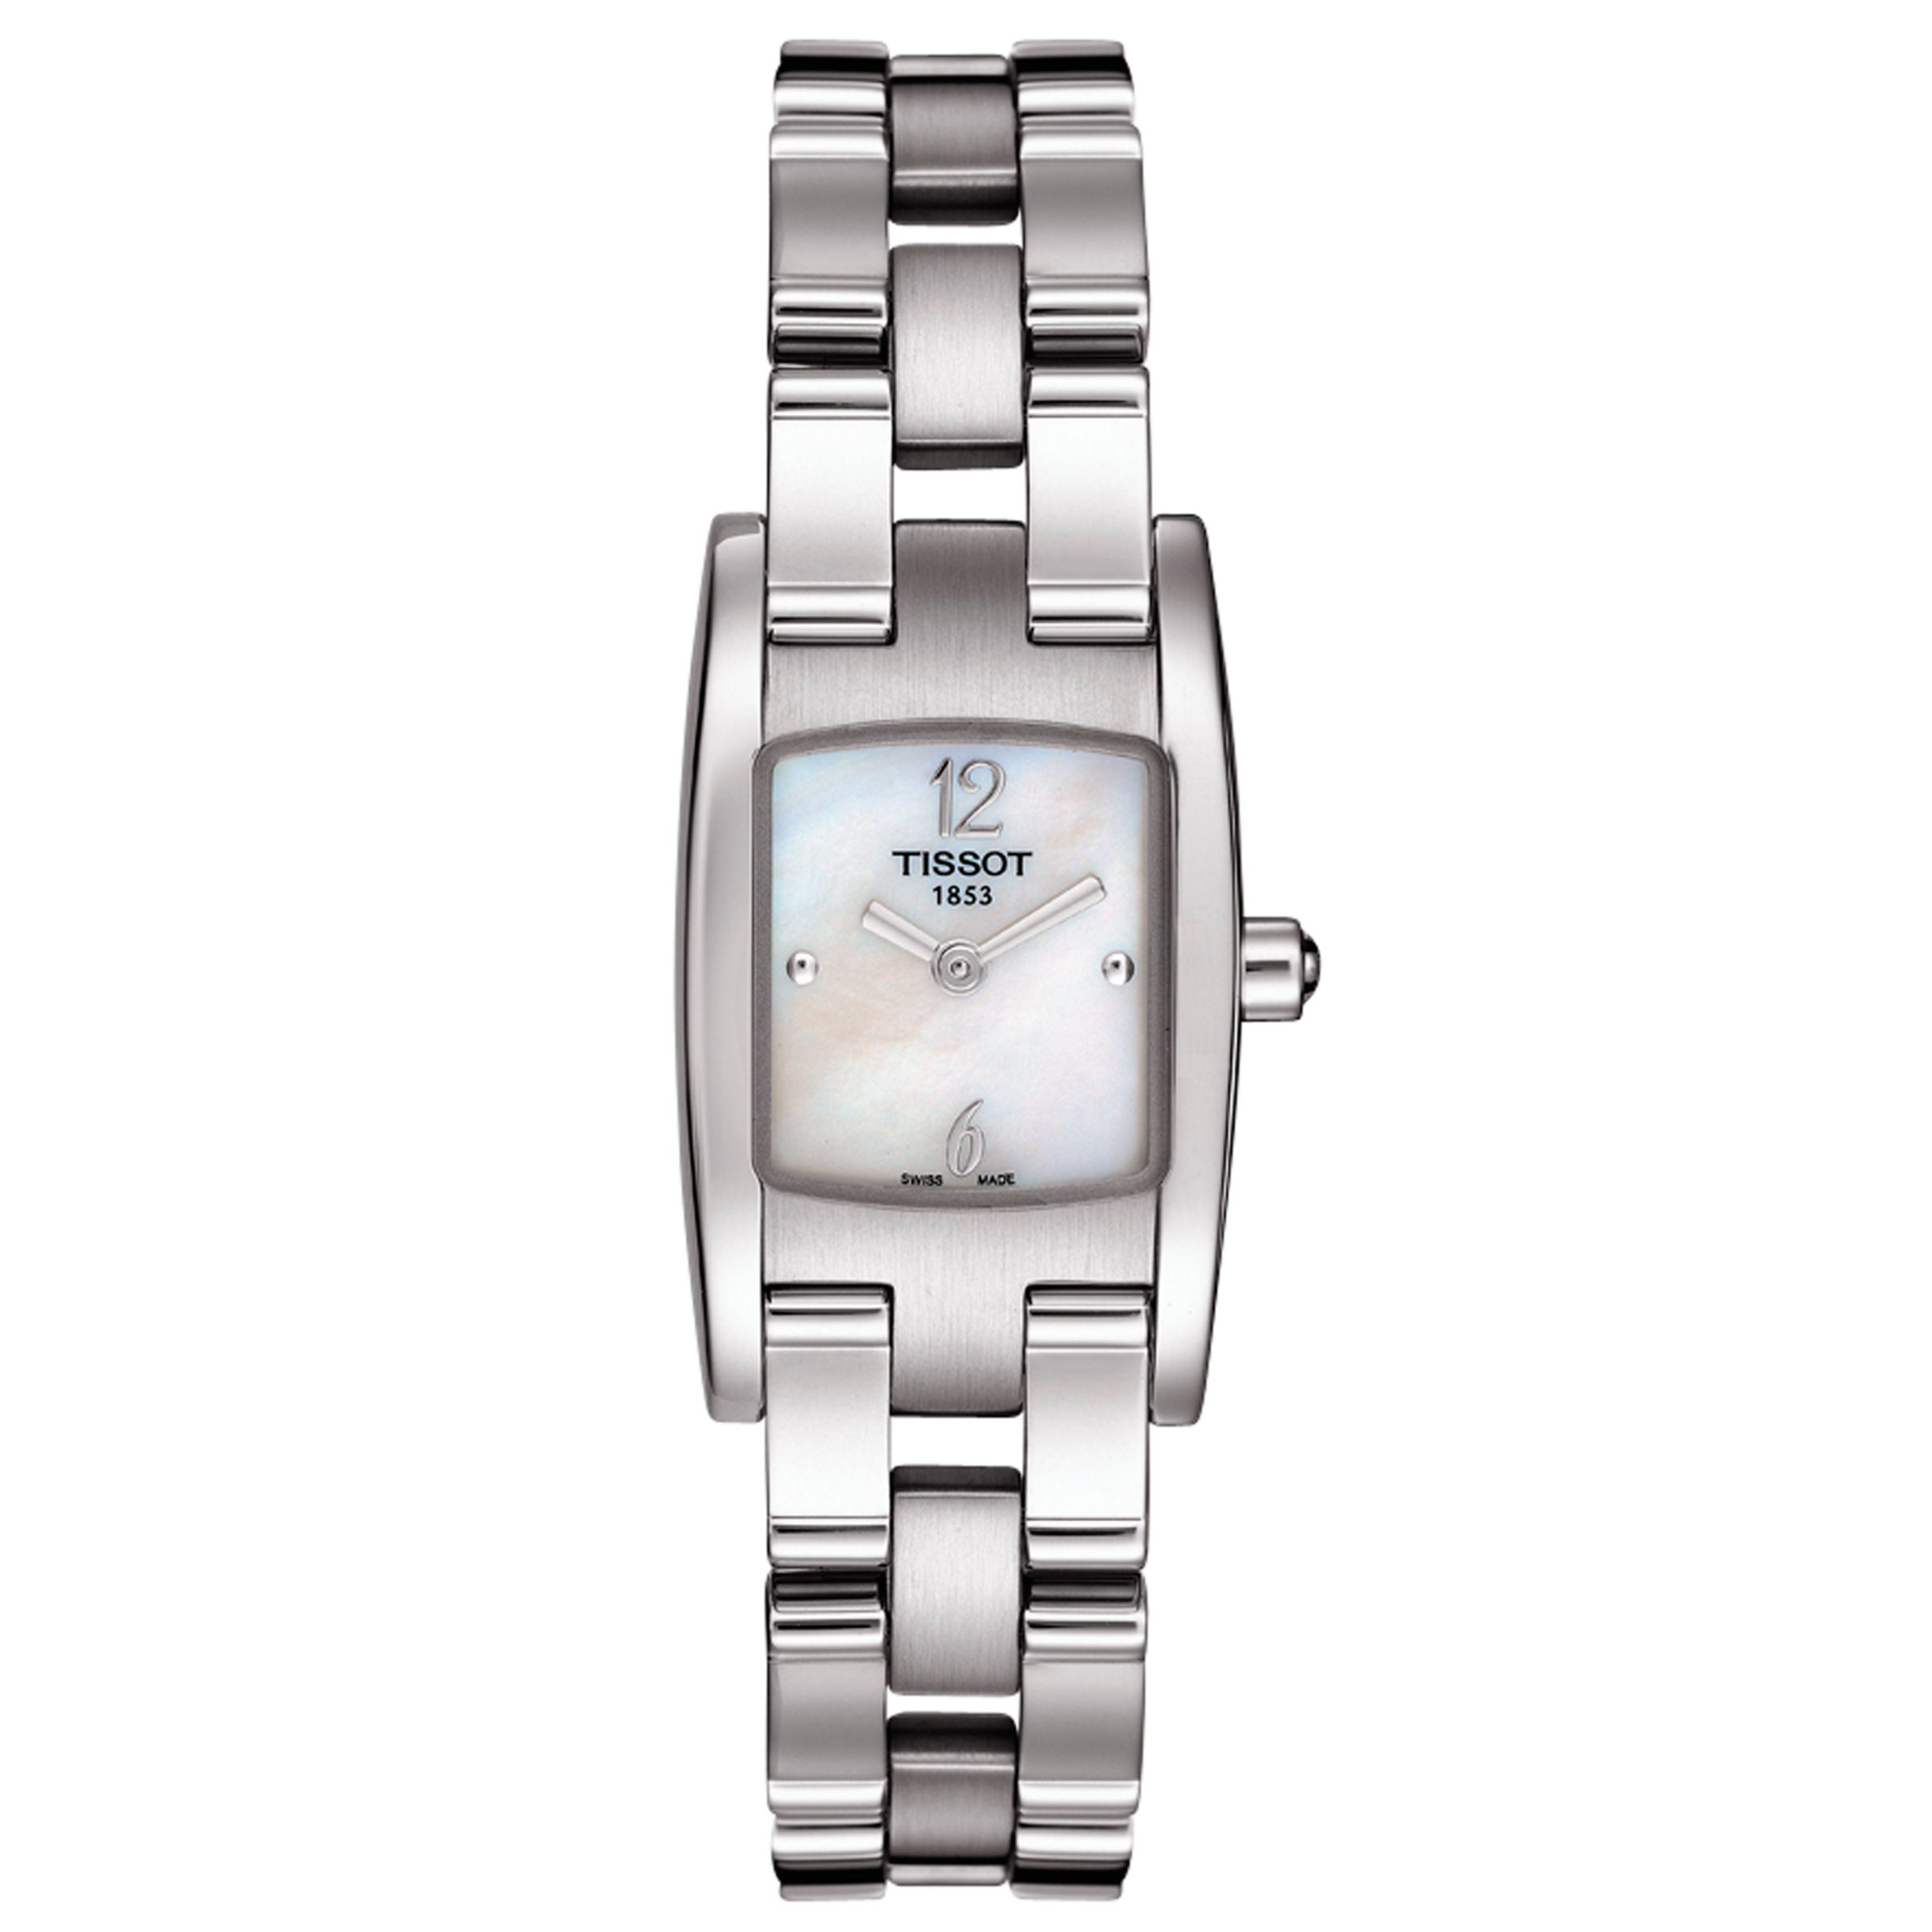 Tissot T-Trend T3 Women's Bracelet Watch at John Lewis